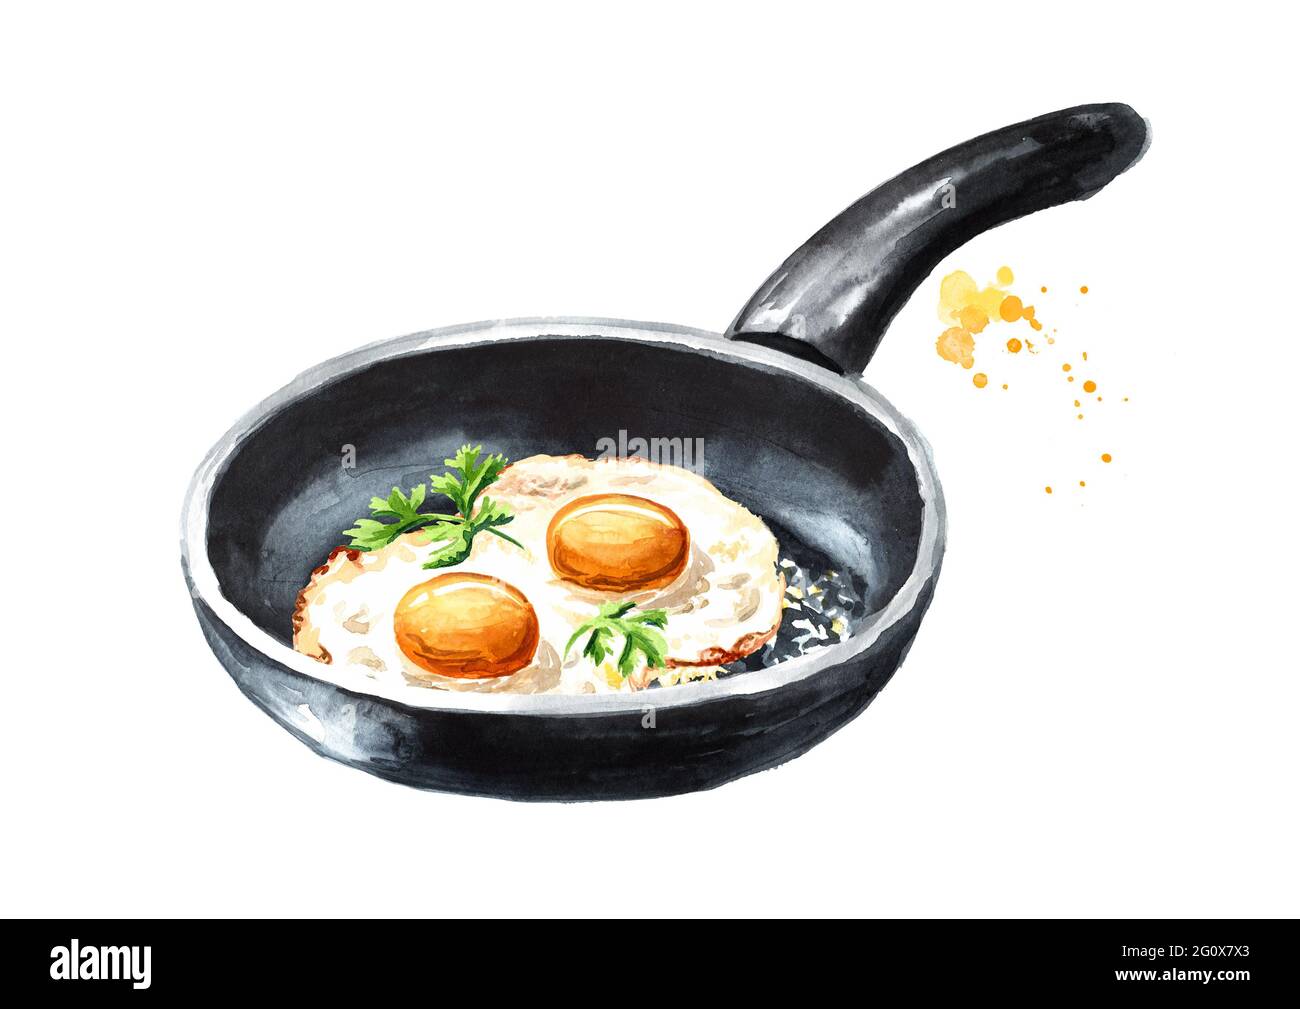 Œufs frits dans une casserole avec des herbes fraîches. Illustration aquarelle dessinée à la main isolée sur fond blanc Banque D'Images